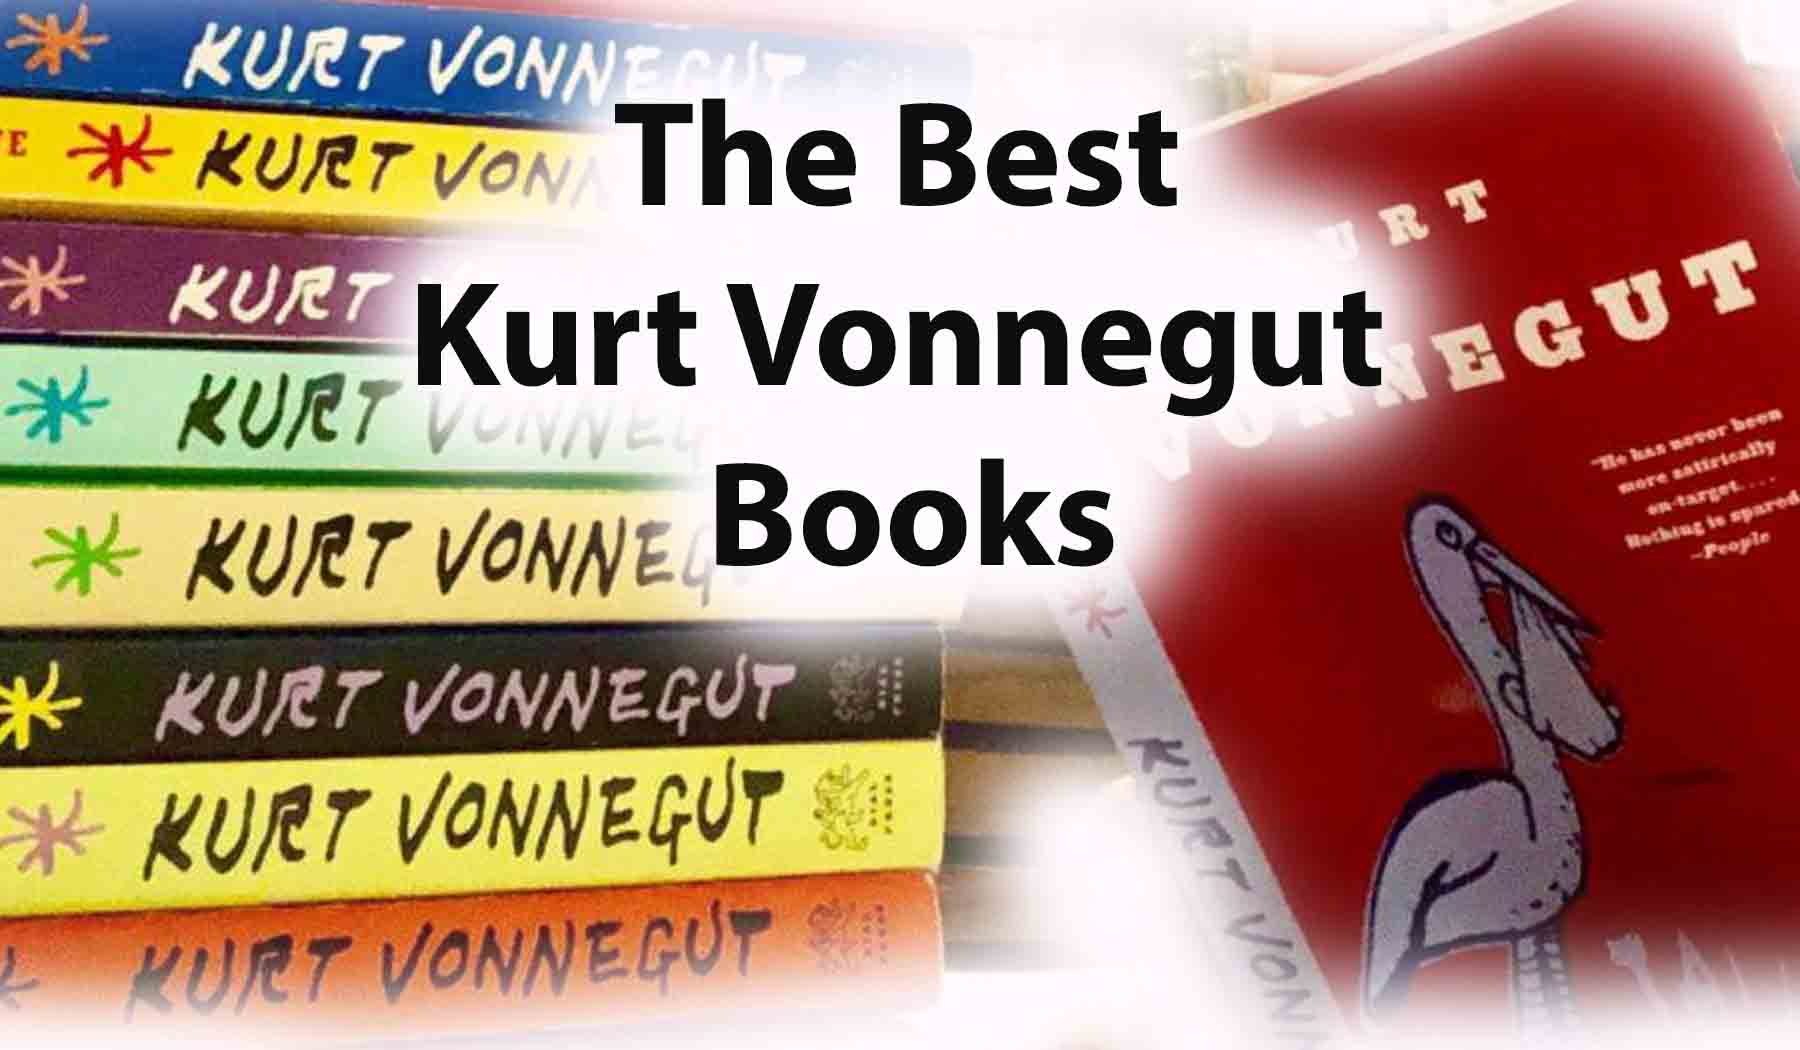 The Best Kurt Vonnegut Books